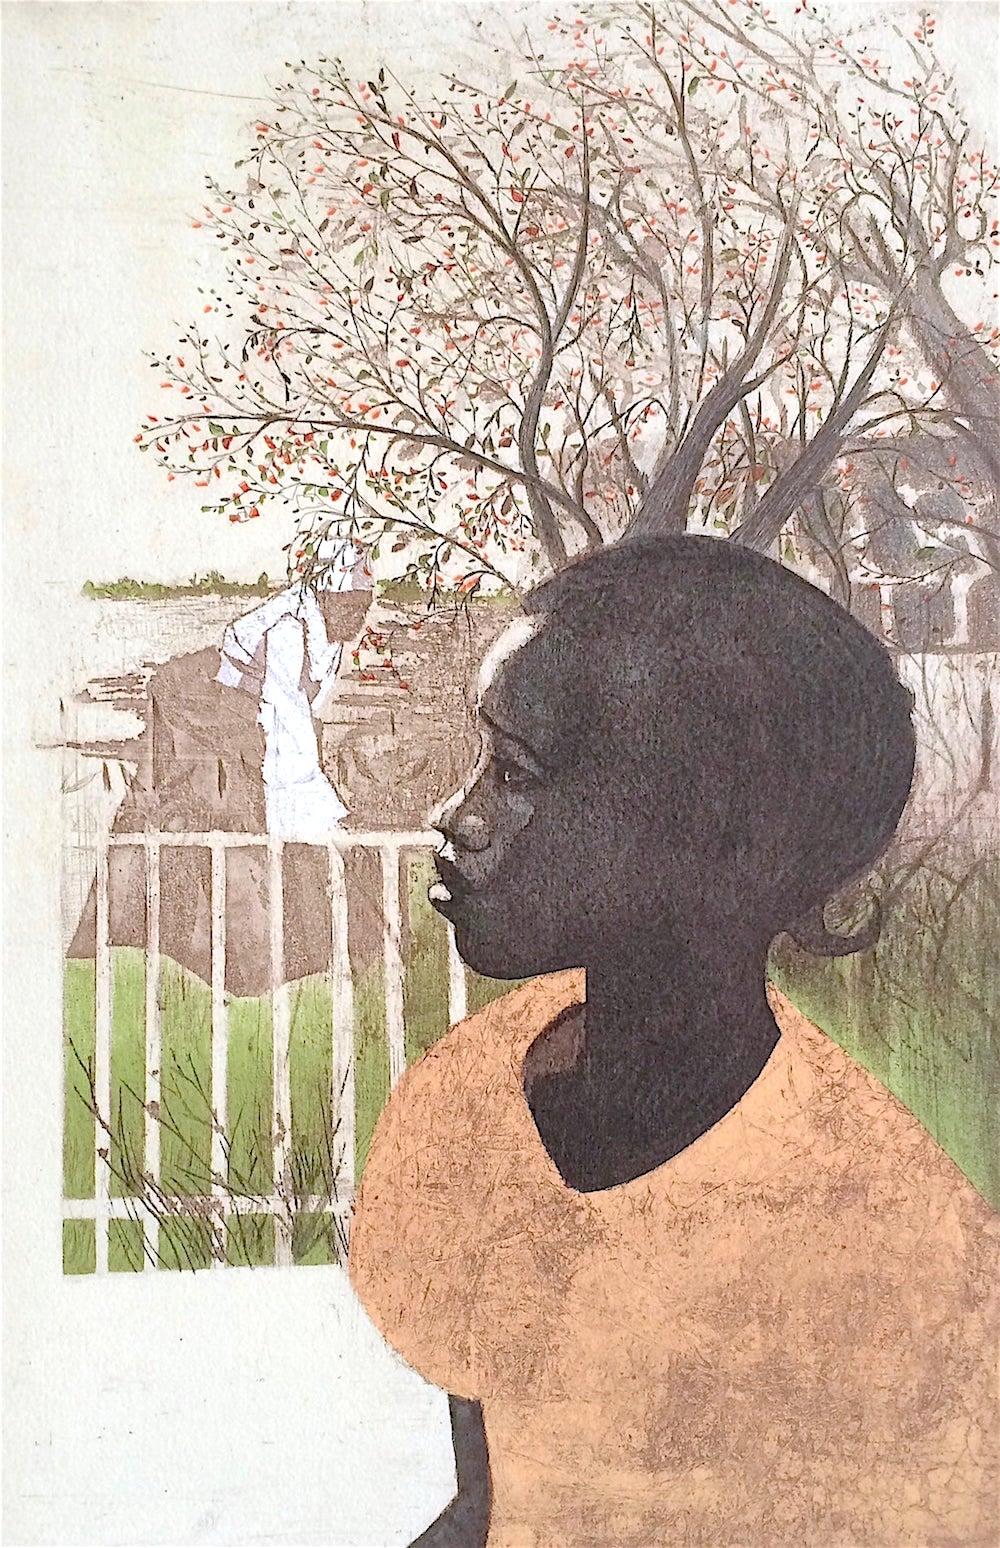 NEU DREAMS, signierte Lithographie, Porträt eines schwarzen Mädchens, afroamerikanische Geschichte – Print von Ernest Crichlow